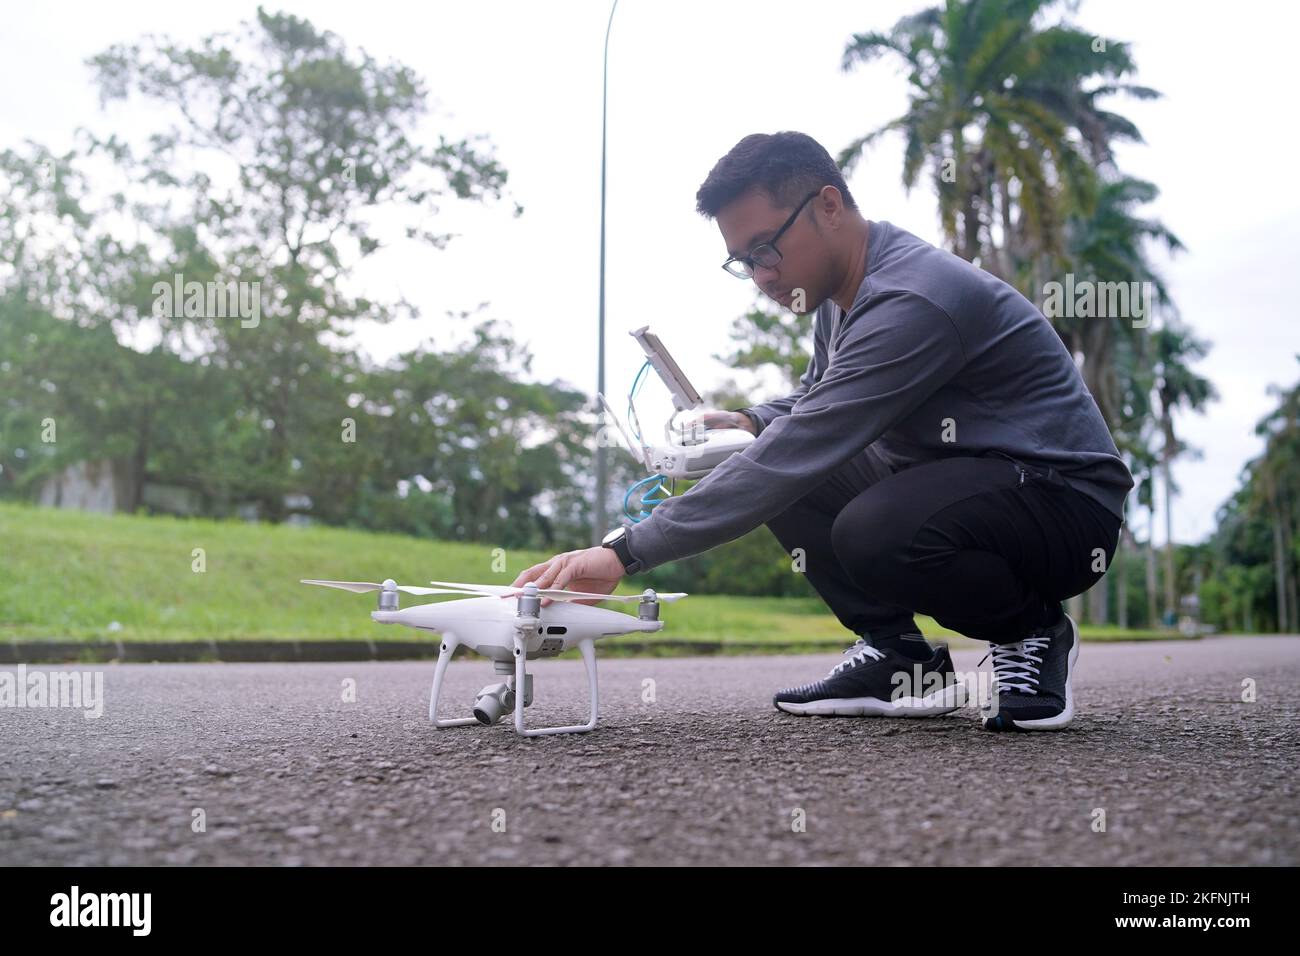 Mitten auf der Straße betreibt ein junger Mann eine Drohne. Junger Mann mit Drohne vor dem Flug. Stockfoto